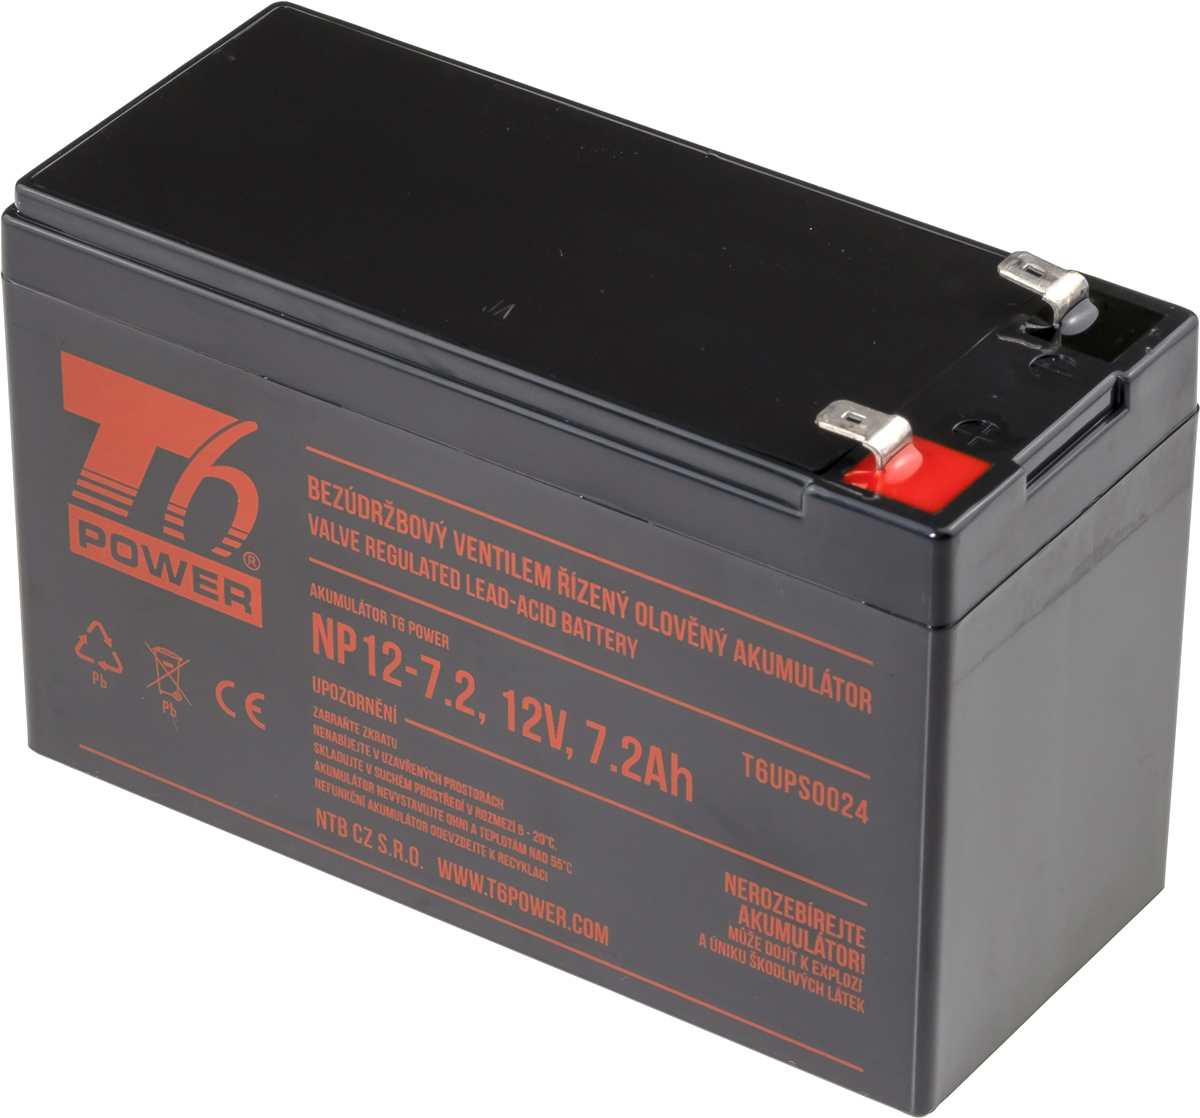 T6 Power RBC2, RBC110, RBC40 - battery KIT T6APC0010